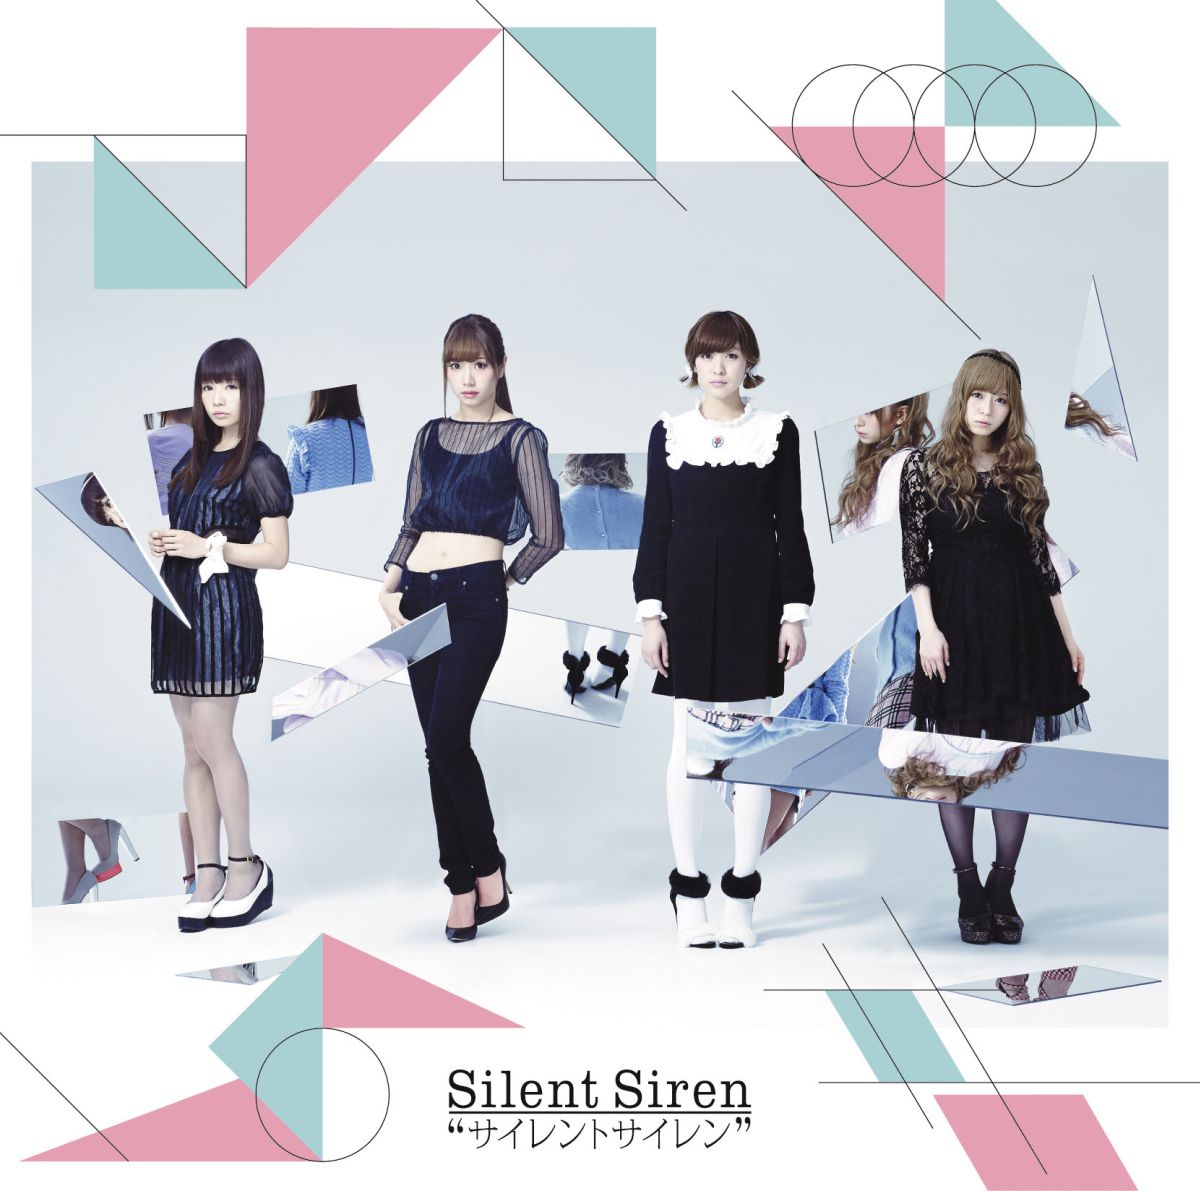 Silent Siren (Album) | Silent Siren Wiki | Fandom